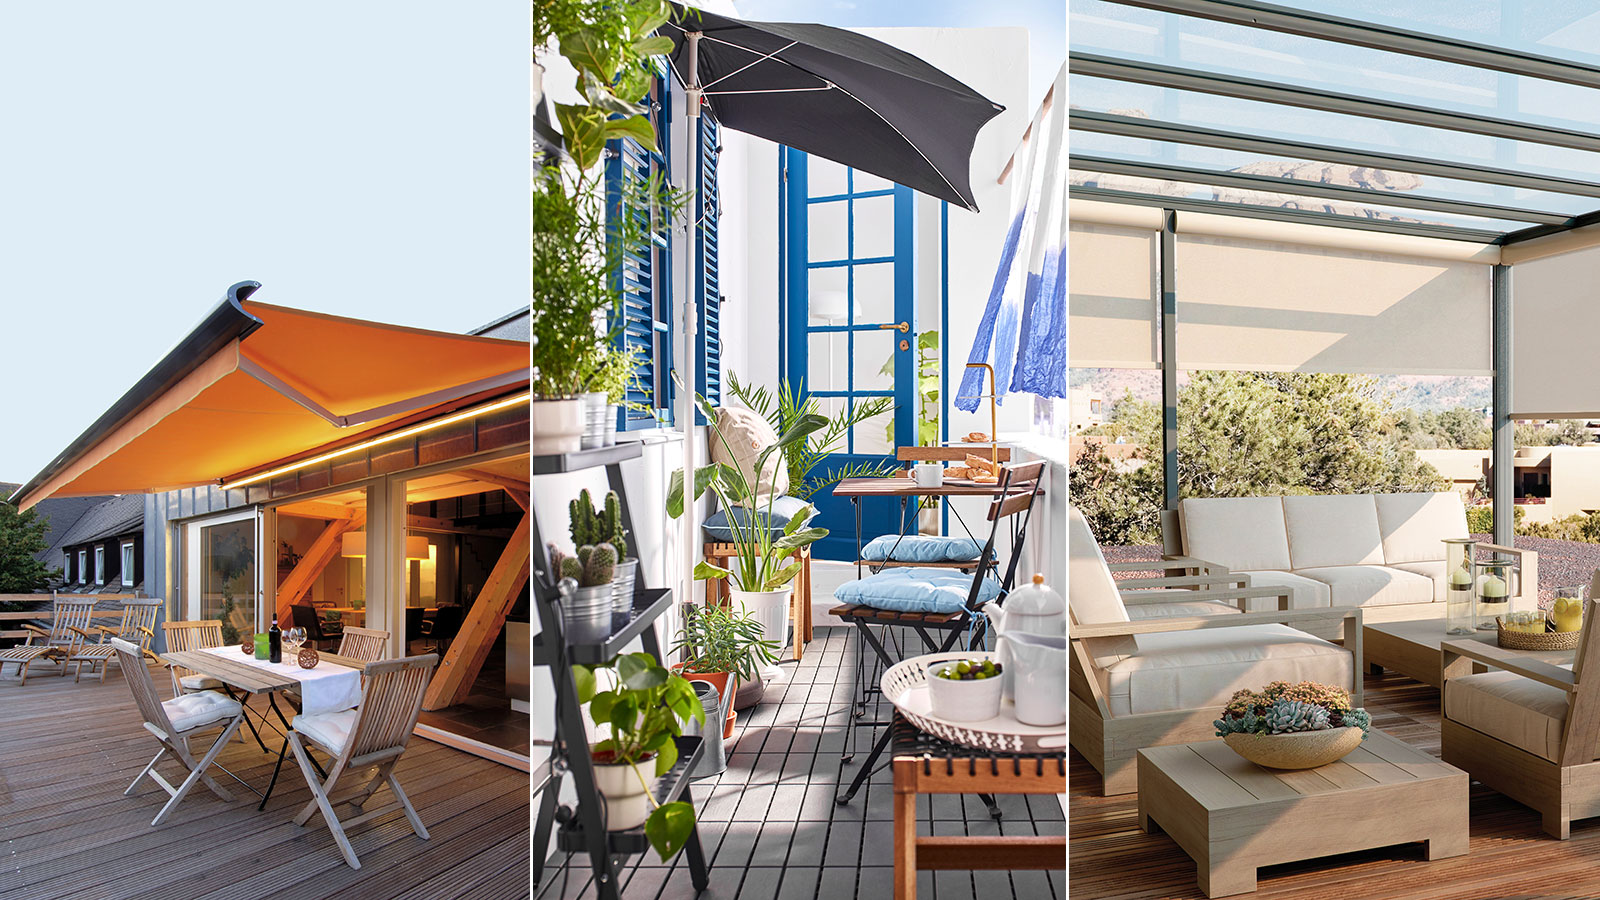 Balcony Shade Ideas: 15 Ways To Shelter It From The Sun |